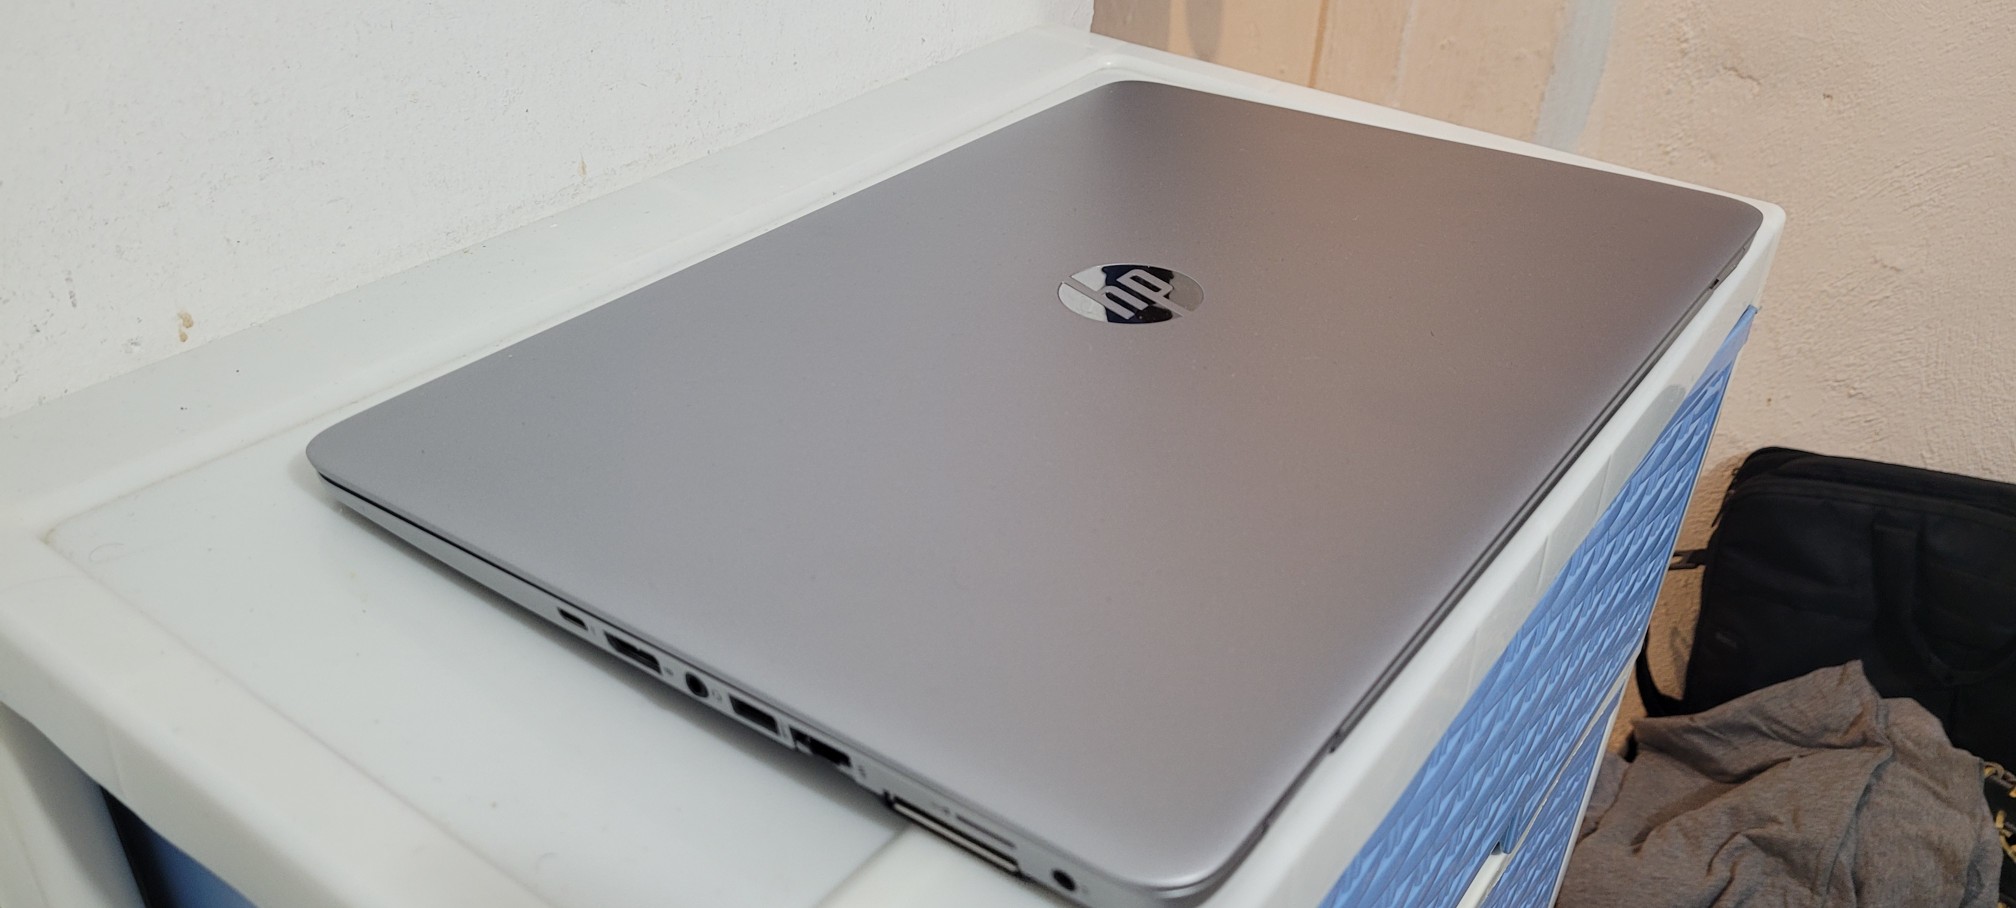 computadoras y laptops - Laptop hp Touch 14 Pulg Core i5 7ma Gen Ram 8gb ddr4 Disco 500gb bluetoth 2